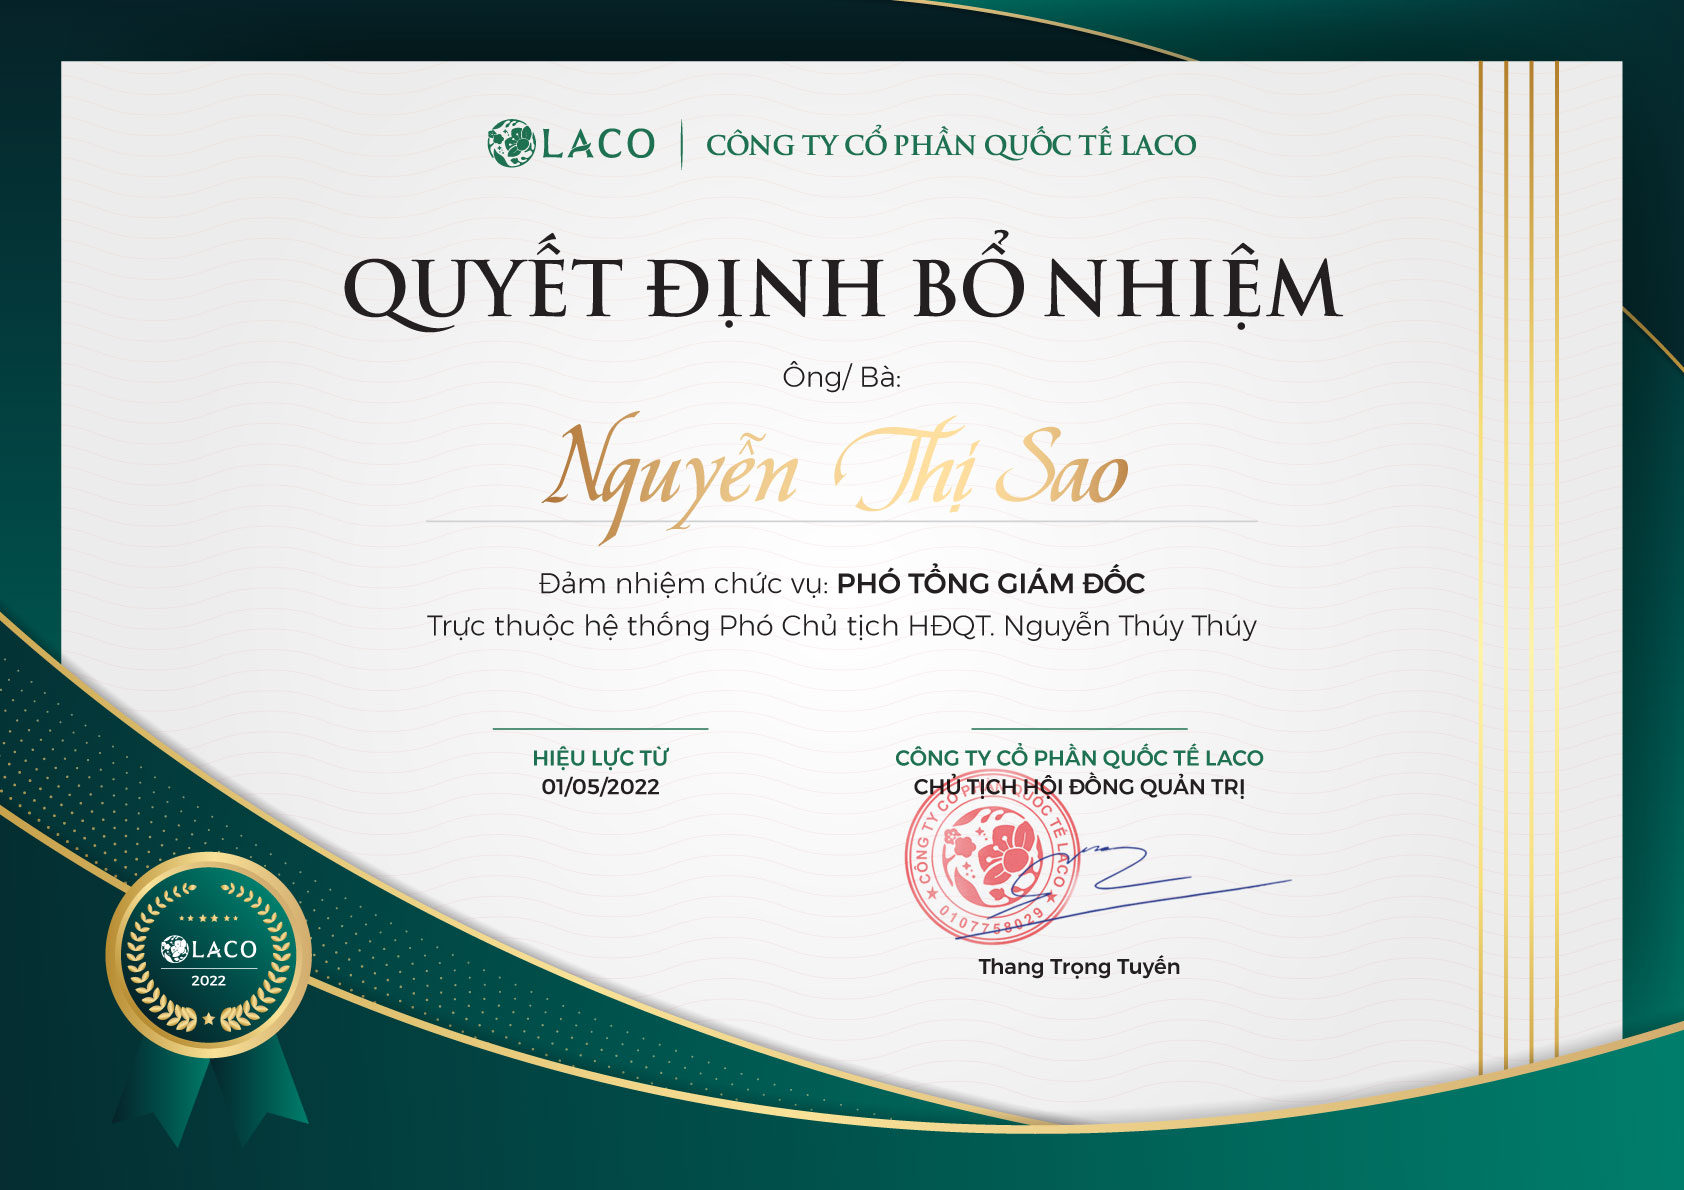 Chúc mừng Tân Phó Tổng Giám Đốc Công ty Cổ phần Quốc tế Laco – Sao Nguyễn